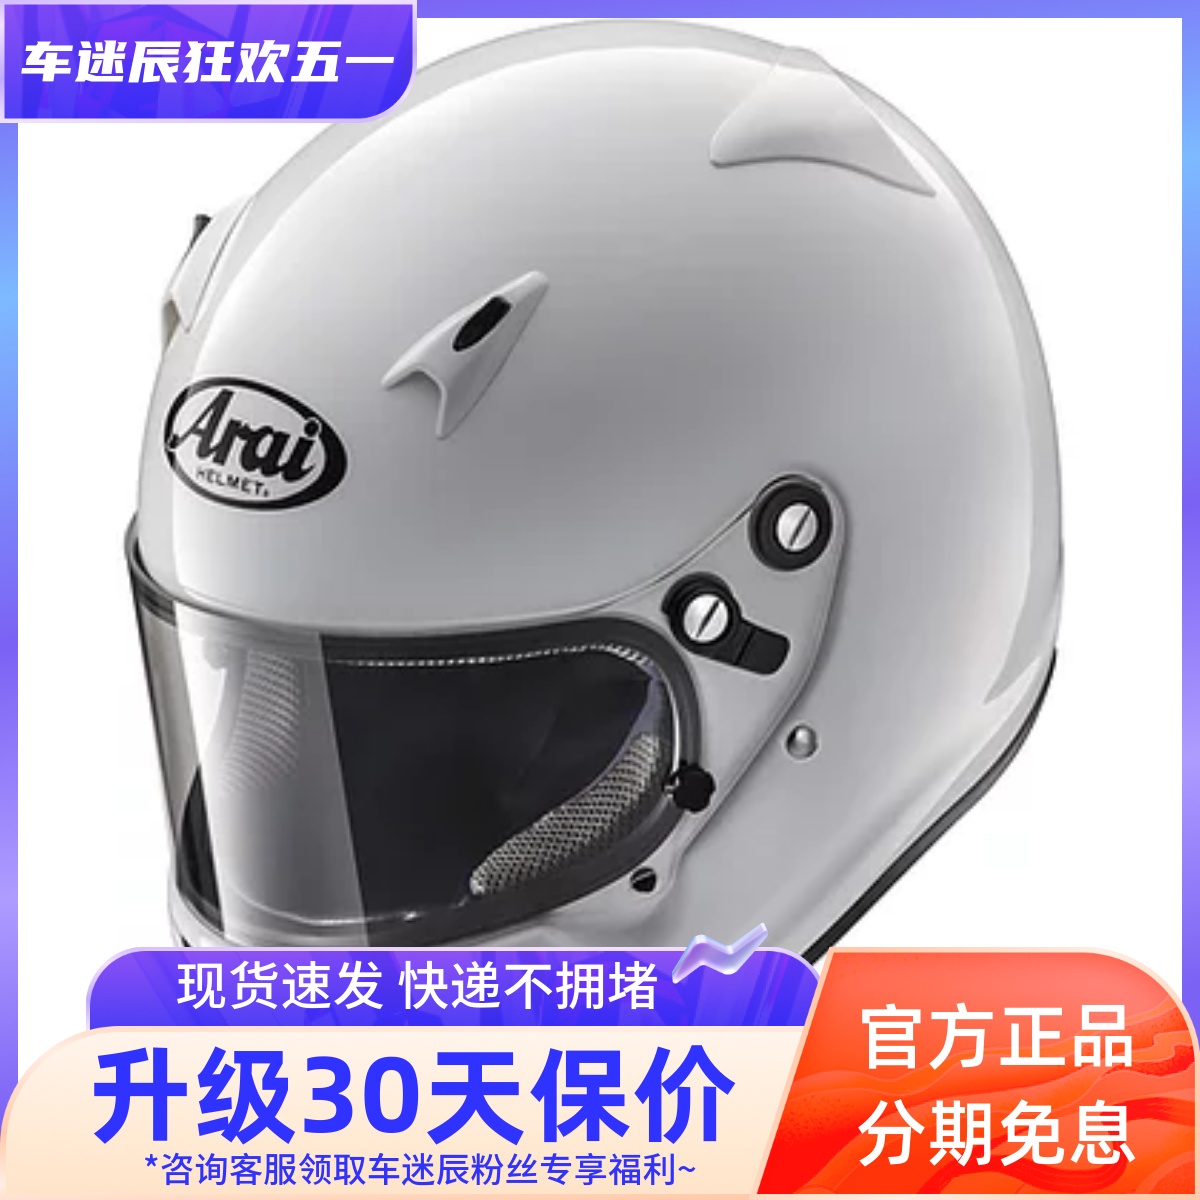 日本Arai CK-6K 青少年儿童卡丁车房车头盔SNELL/FIA CMR认证正品